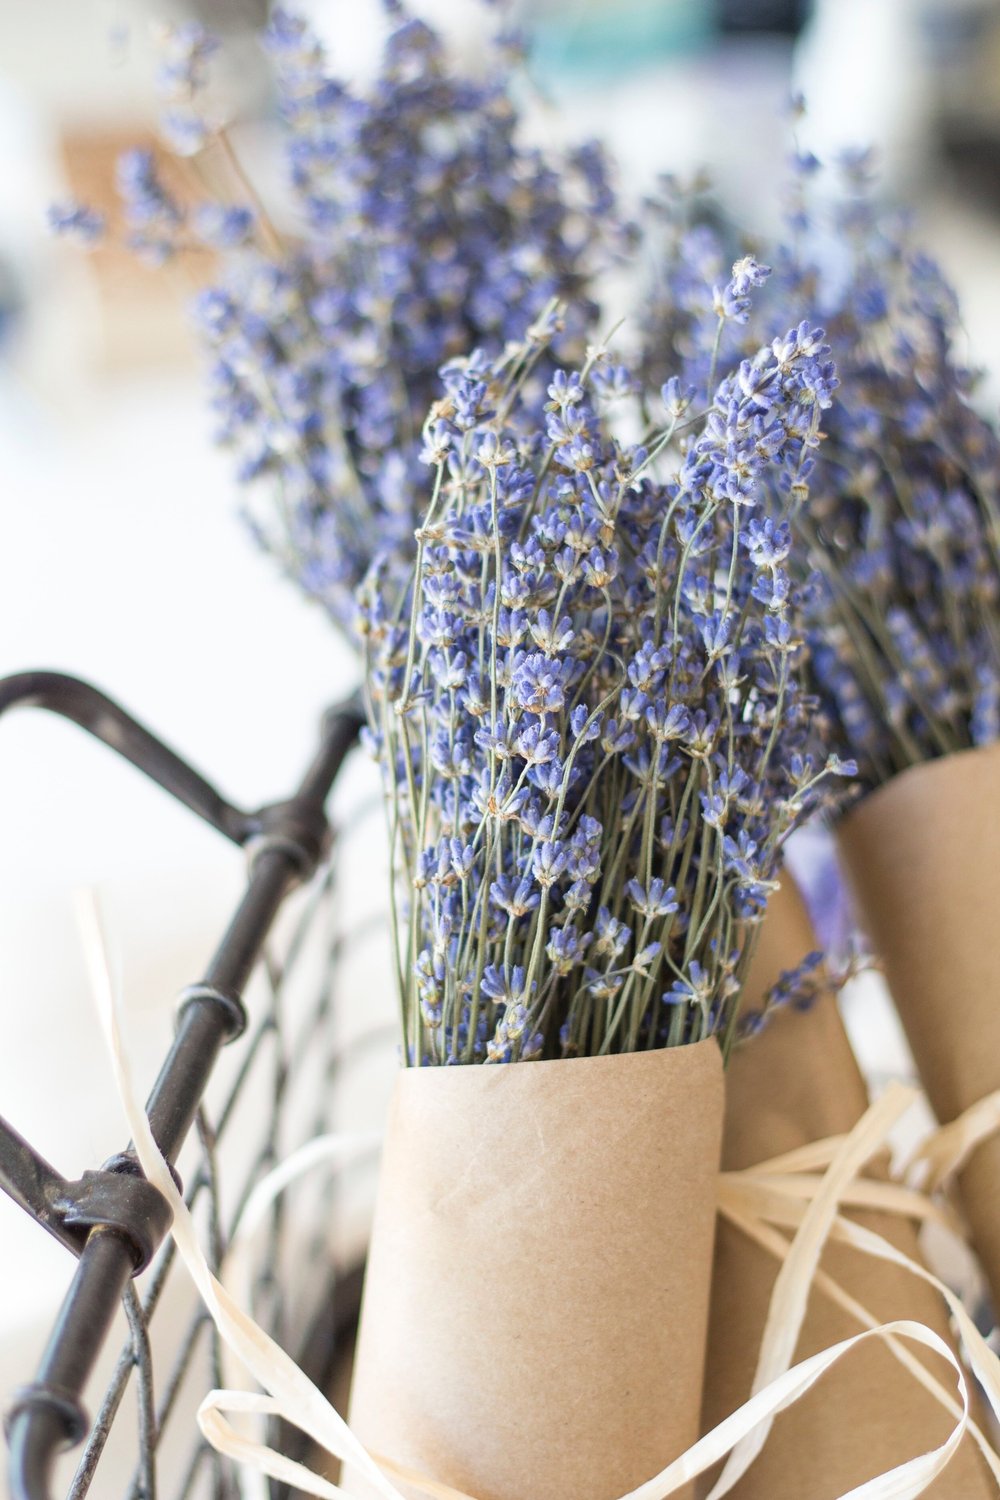 Kansas%Lavender%Farm%Online%Boutique%Flower%Truck%shop% — Sweet Streams  Lavender